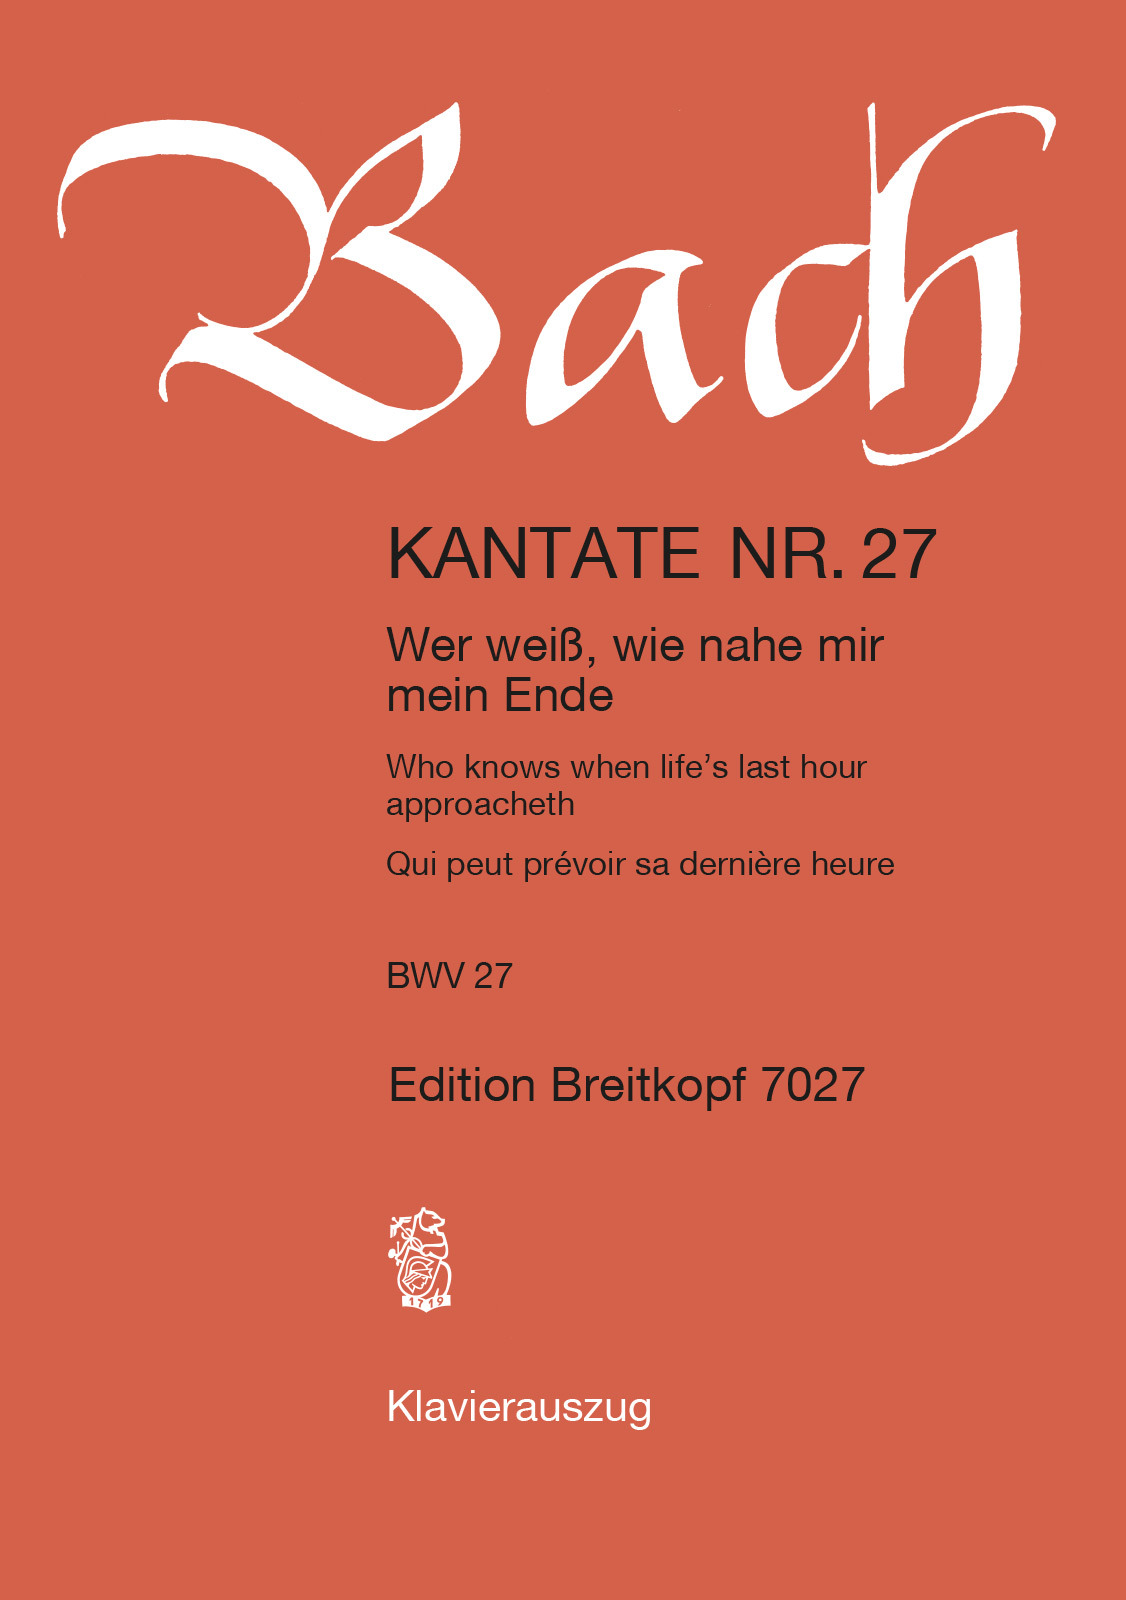 J. S. Bach - KANTATE NR.27  - WER WEIß, WIE NAHE MIR MEIN ENDE BWV 27. KLAVEIRAUSZUG